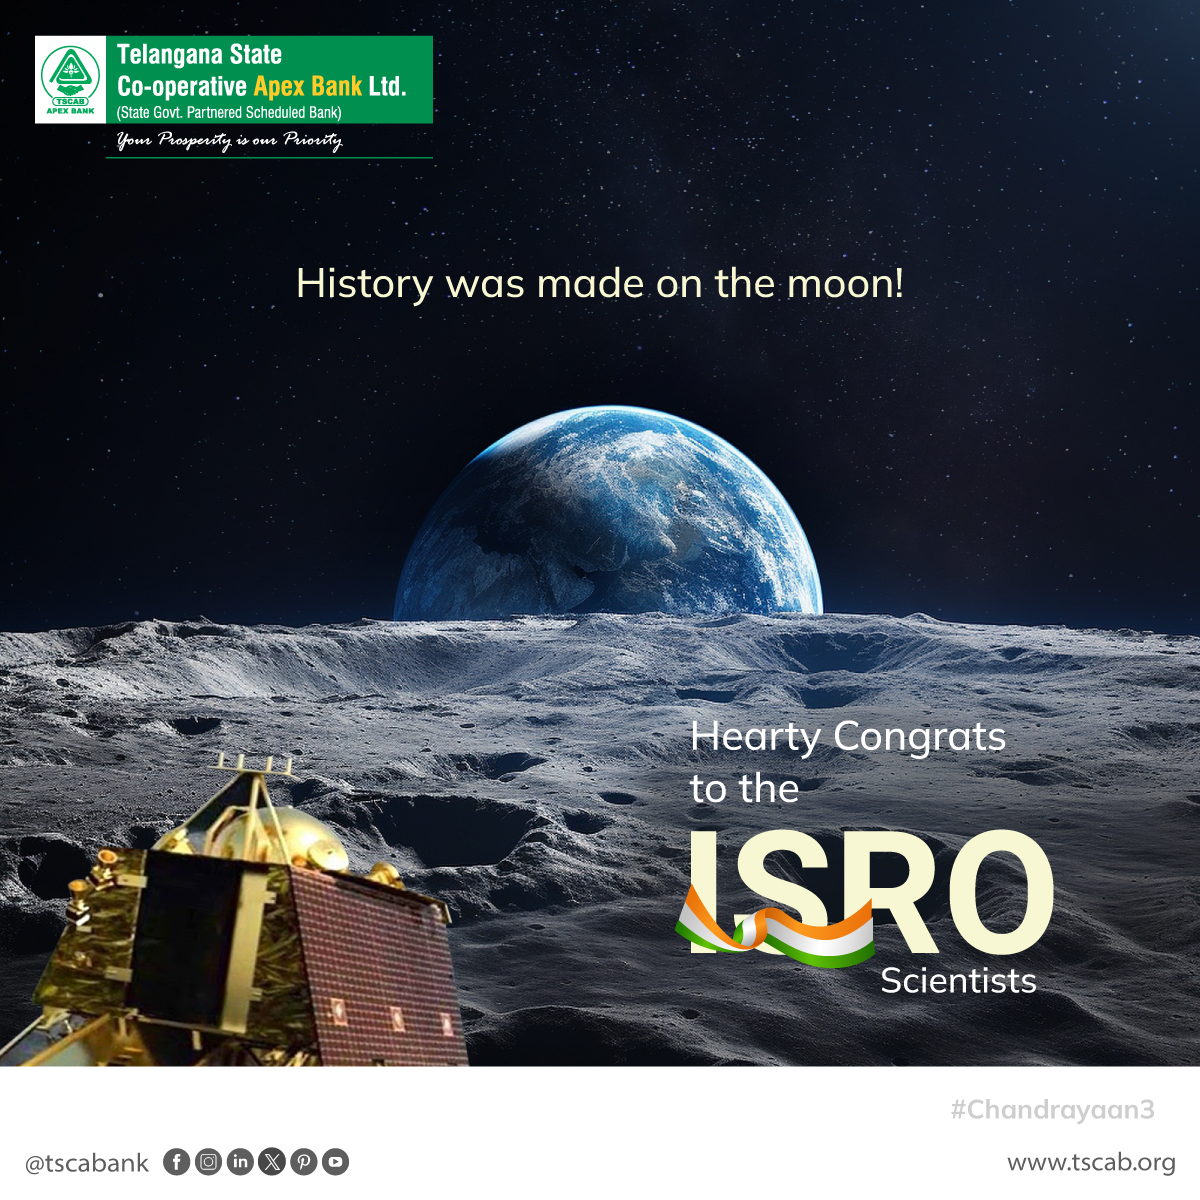 History was made on the moon!

Hearty Congrats to the ISRO Scientists

#TSCAB #telanganastatecooperativestateapexbank #chandrayaan3 #isro #missionmoon #proudofindia #india